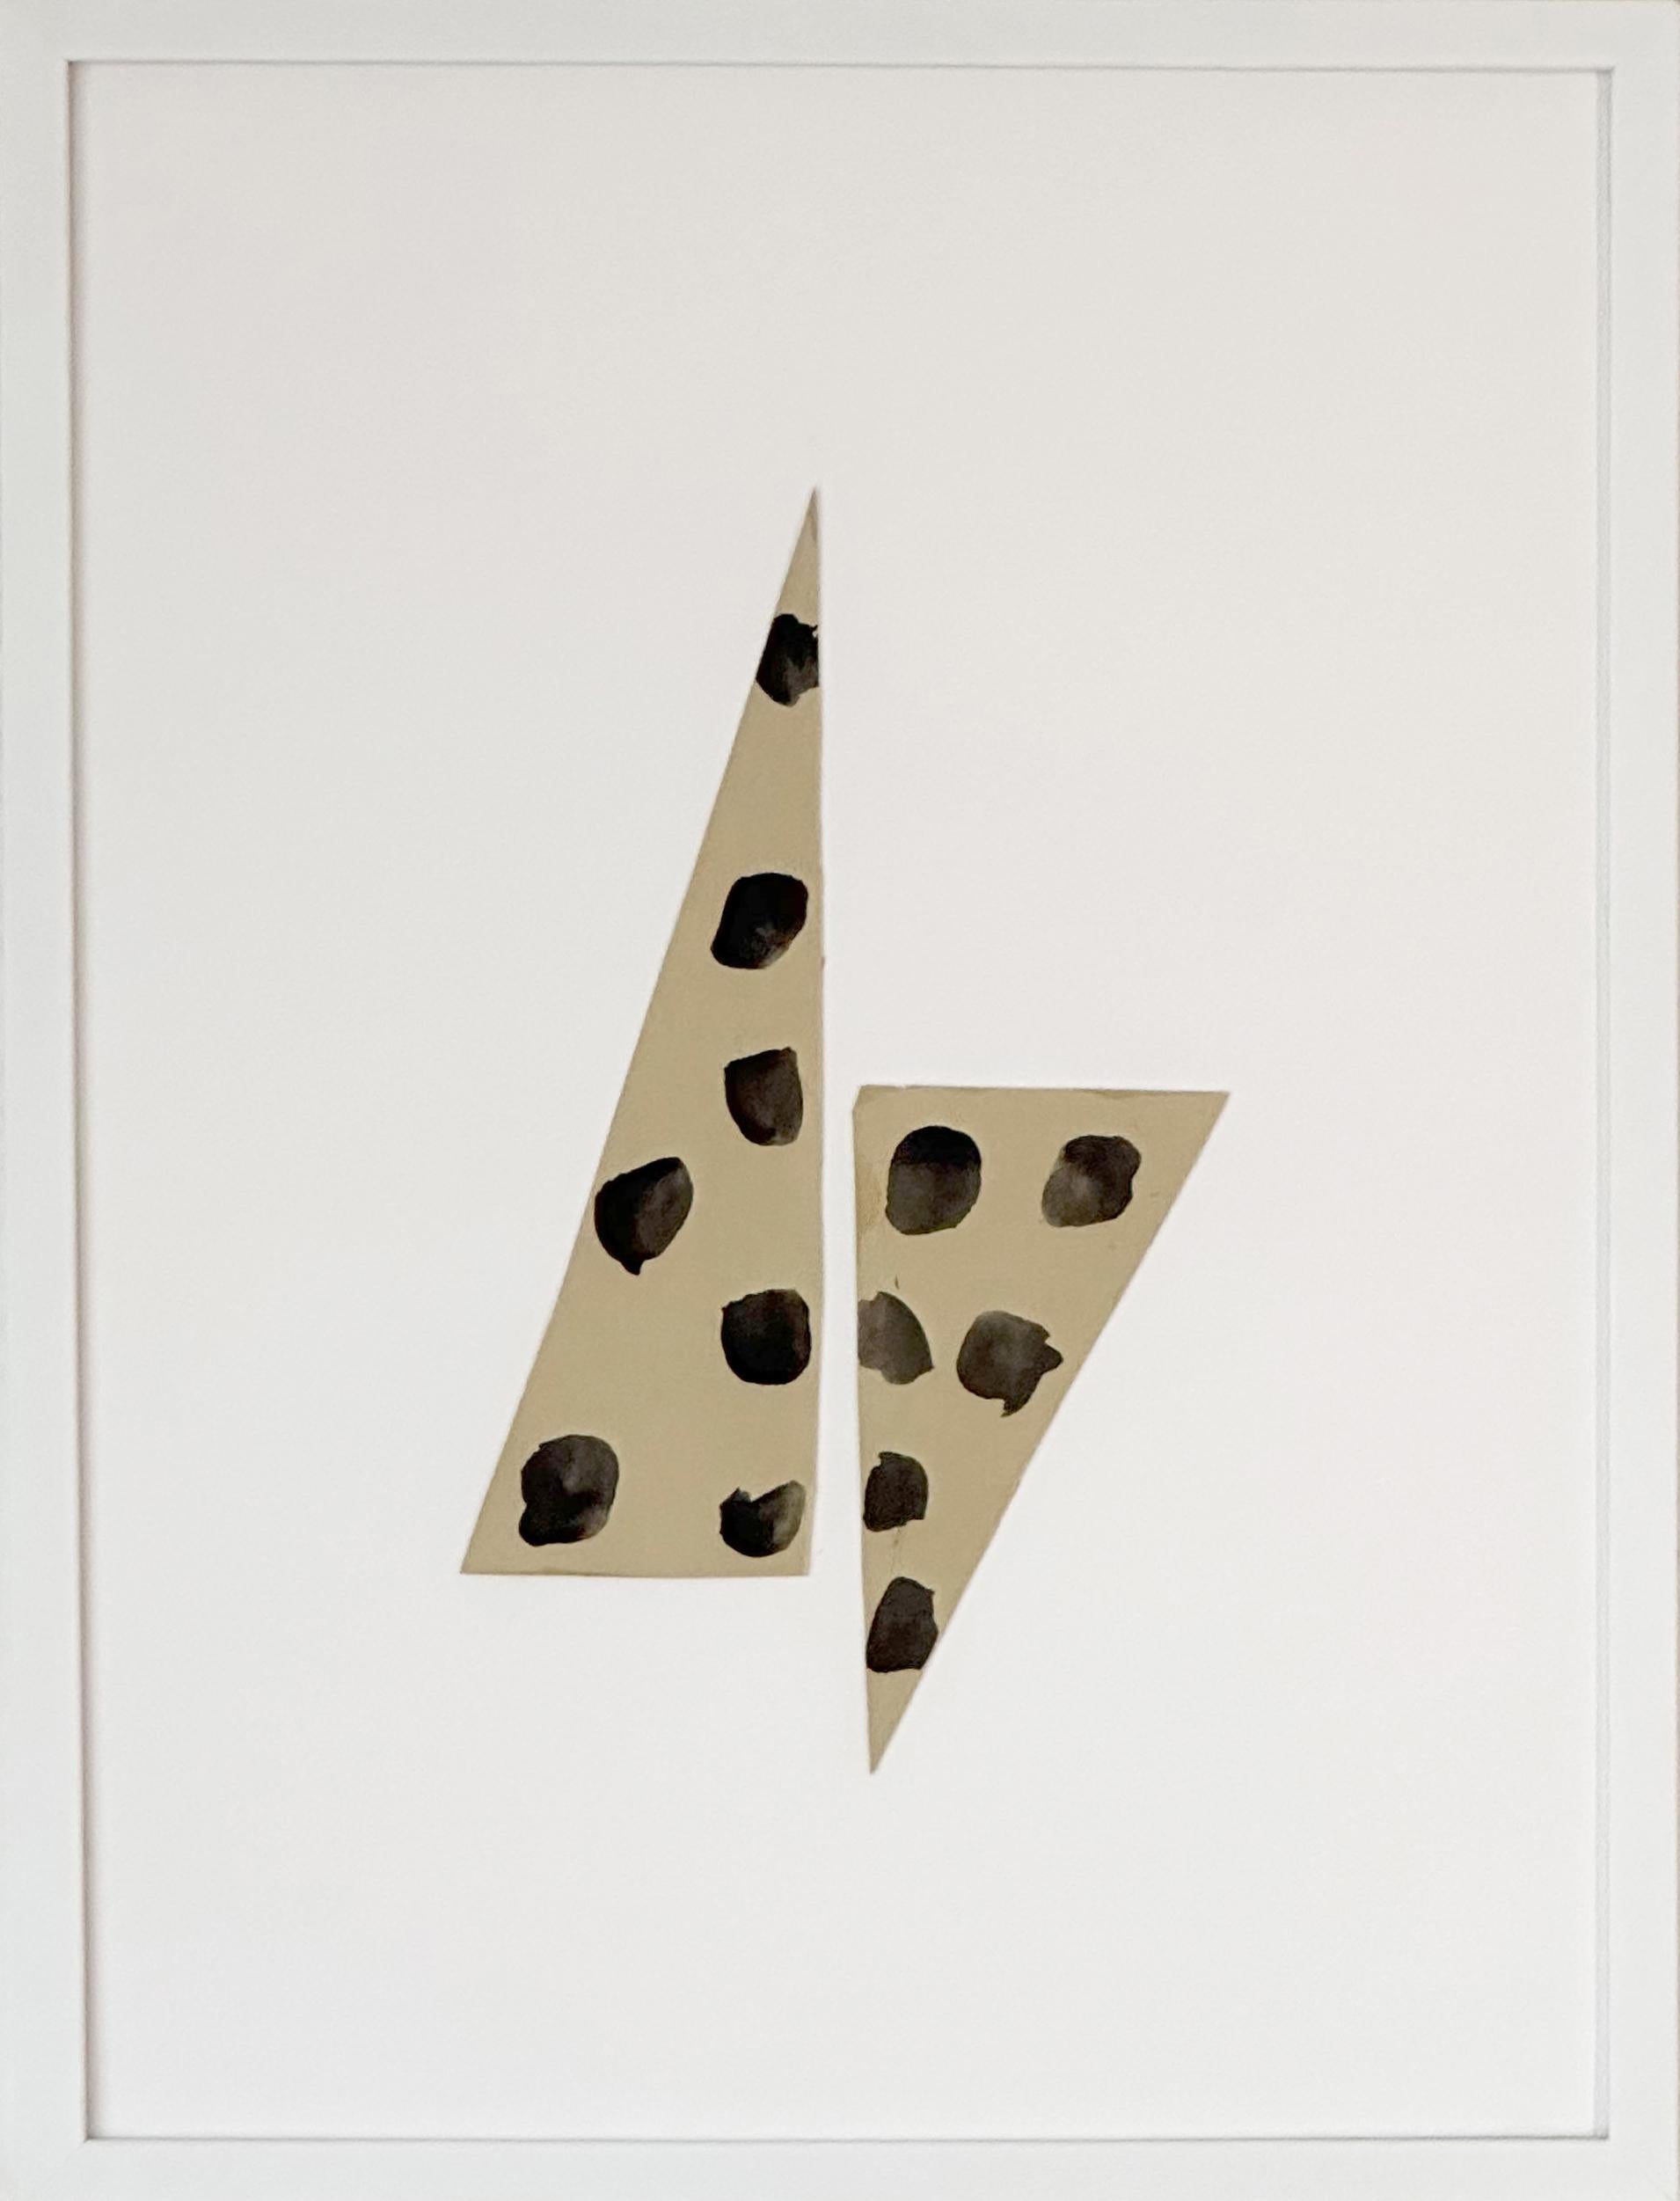 Abstract Drawing Amanda Andersen - Collage sur papier, pois, beige, neutre, géométrique, moderne